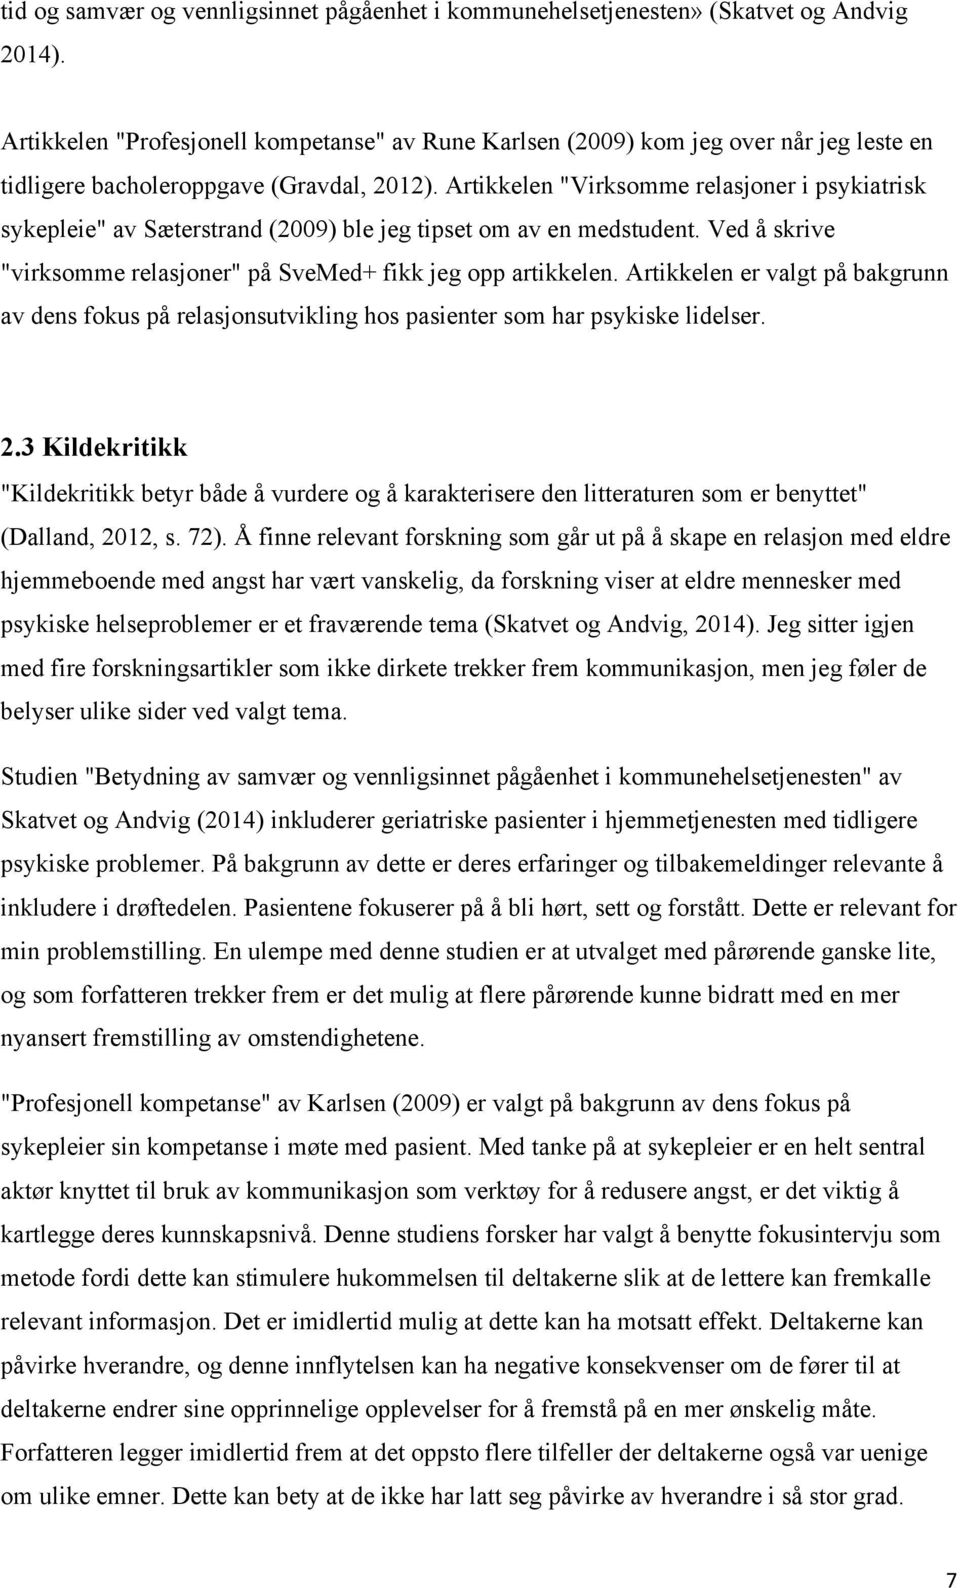 Artikkelen "Virksomme relasjoner i psykiatrisk sykepleie" av Sæterstrand (2009) ble jeg tipset om av en medstudent. Ved å skrive "virksomme relasjoner" på SveMed+ fikk jeg opp artikkelen.